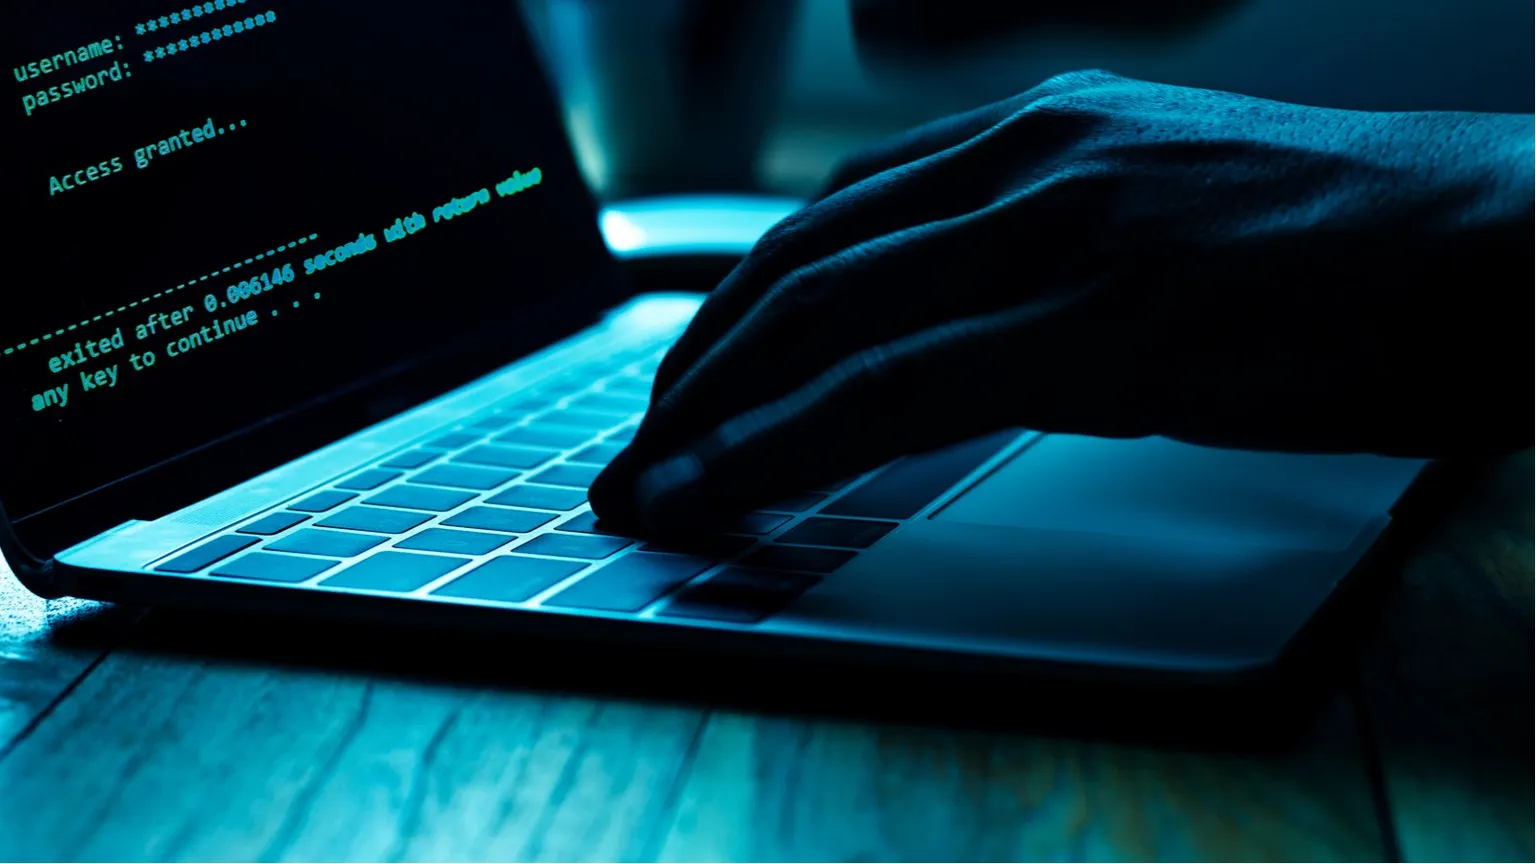 Los hackeos siguen siendo un problema para la industria de criptomonedas. Imagen: Shutterstock